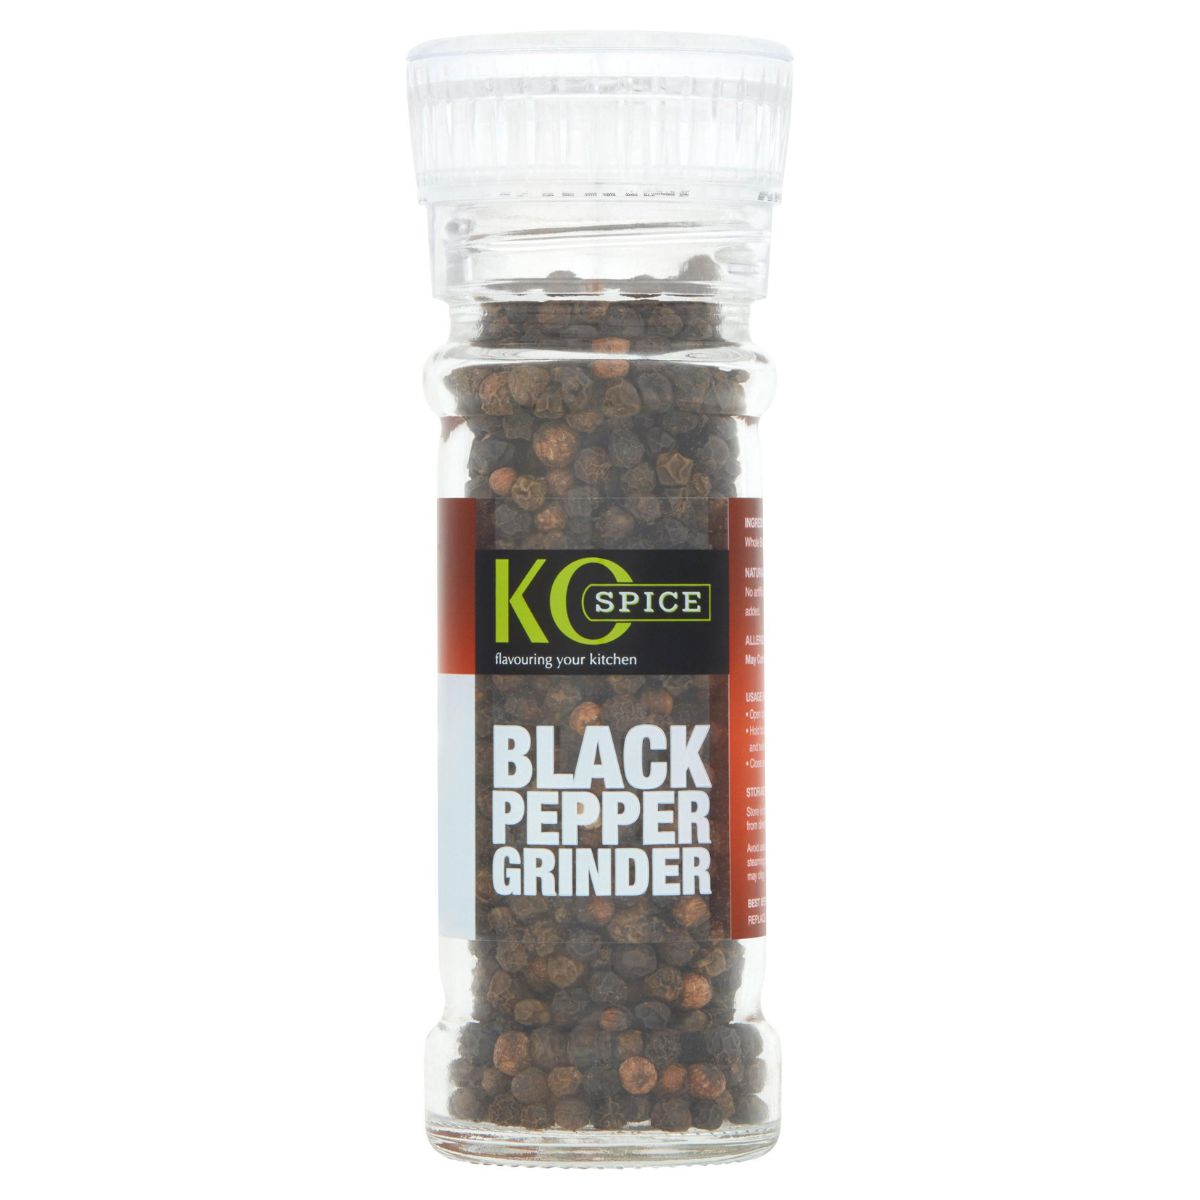 A jar of Ko Spice - Black Pepper Grinder - 50g on a white background.